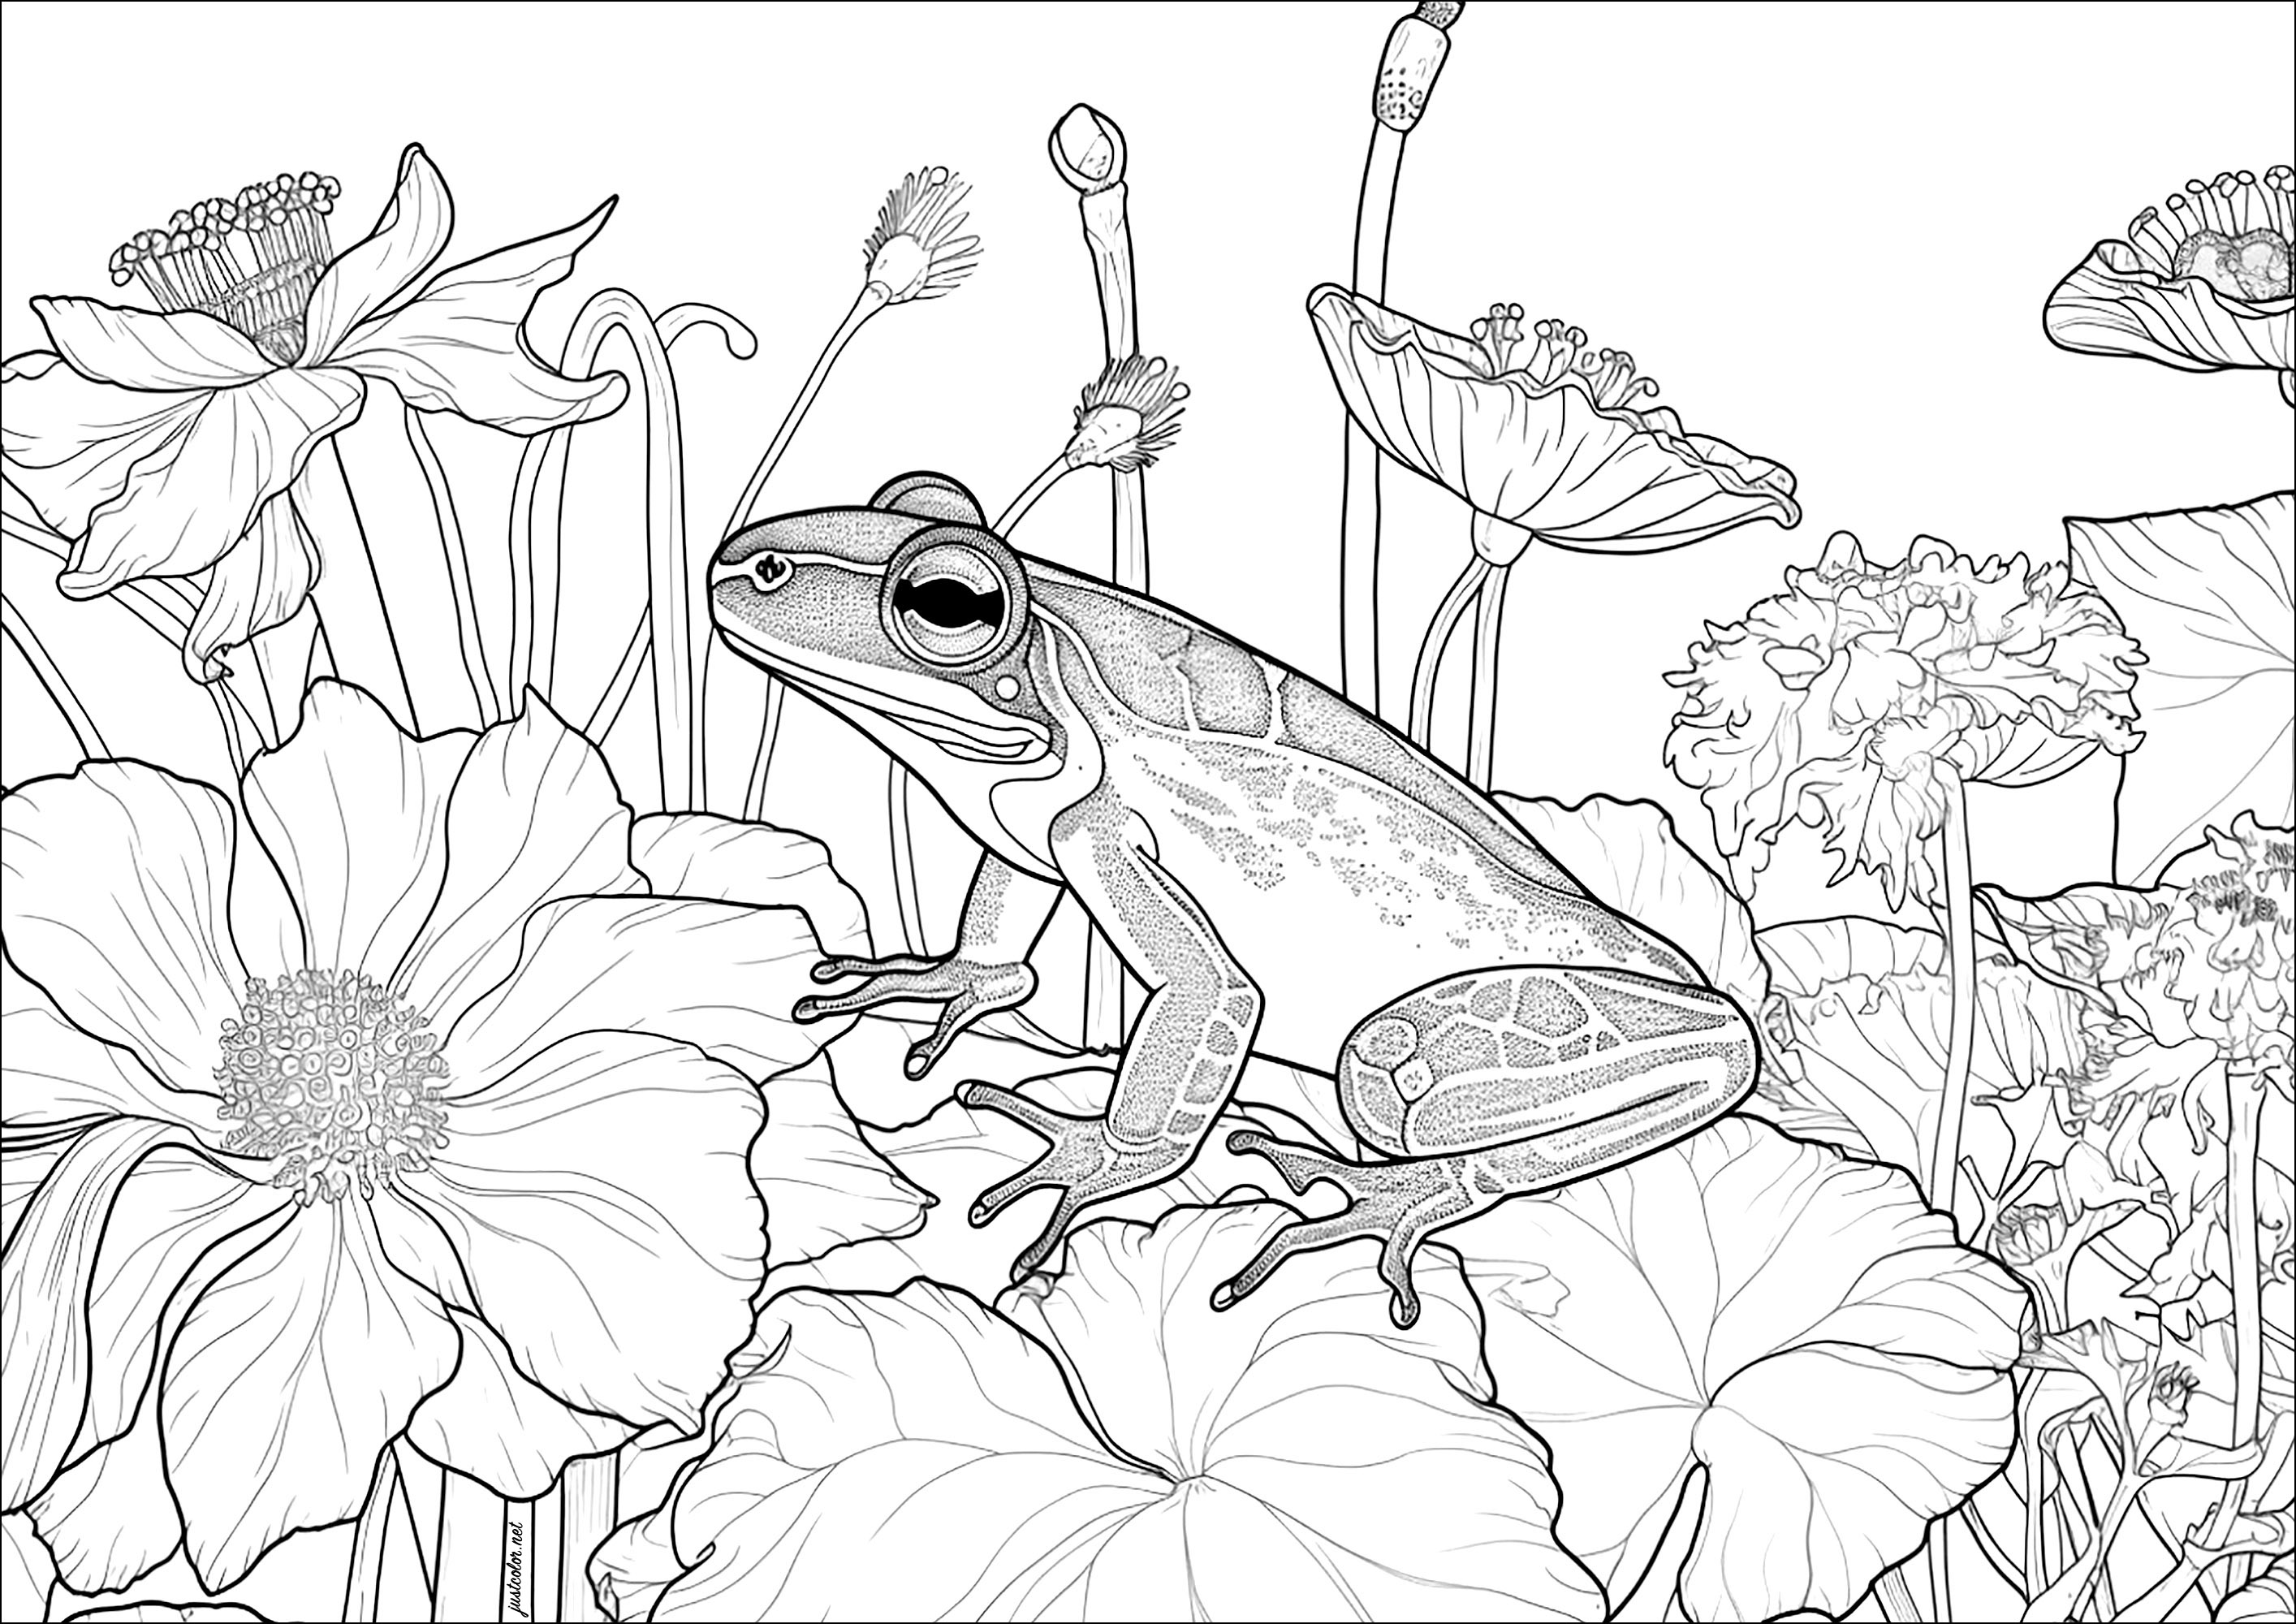 Belle grenouille sur des fleurs. Ce coloriage relaxant est facile à réaliser car les fleurs sont grandes et bien délimitées